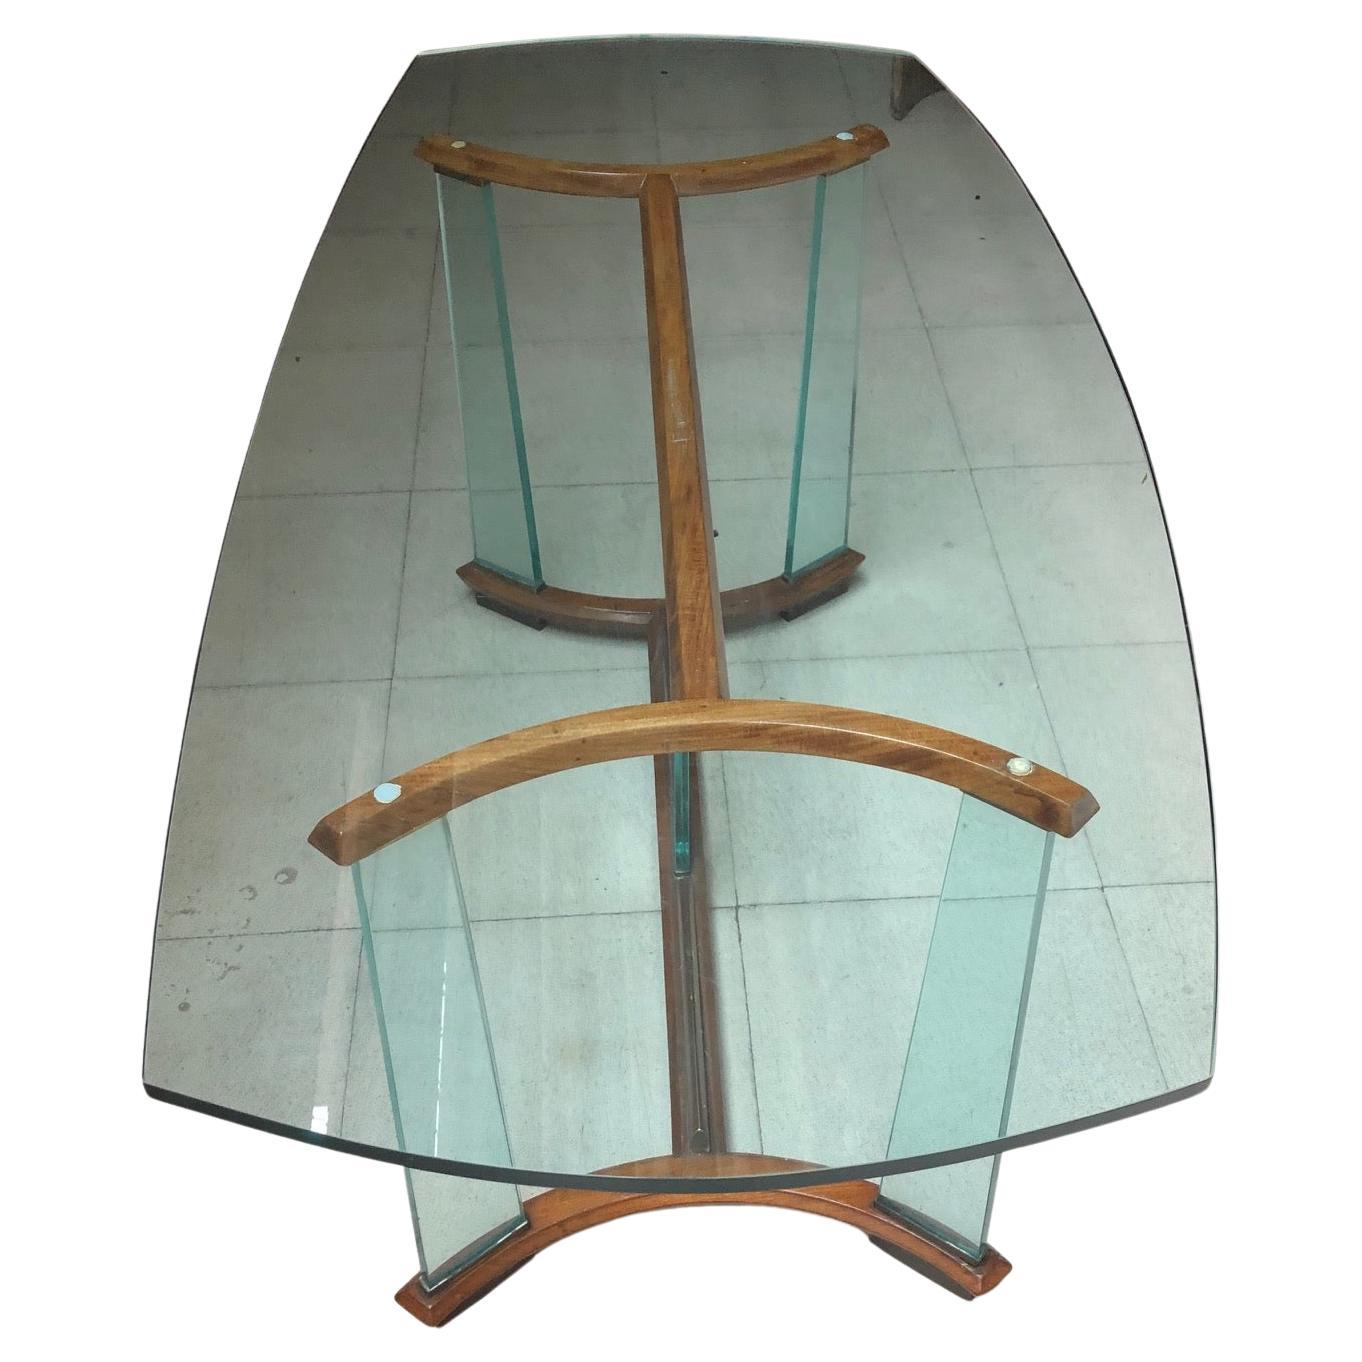 Esstisch Art Deco

Jahr: 1950
Land: Italienisch
Holz, Bronze und Glas
Er ist ein eleganter und anspruchsvoller Esstisch.
Sie wollen in den goldenen Jahren leben, ist dies der Esstisch, dass Ihr Projekt braucht.
Seit 1982 haben wir uns auf den